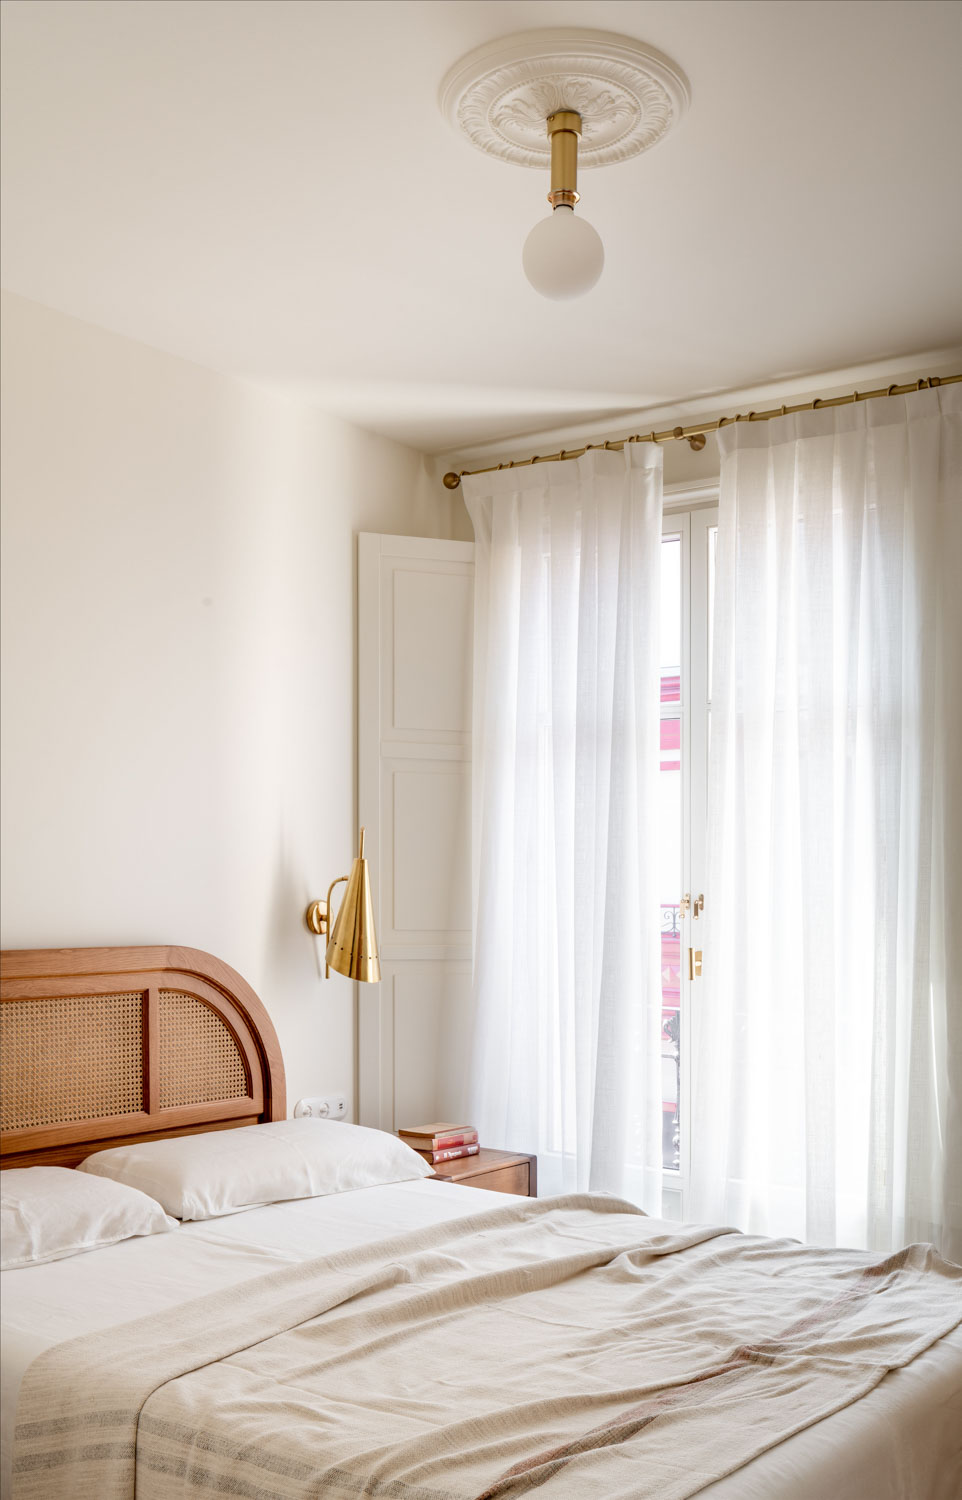 Imagen del dormitorio - Fotografía de arquitectura por Biderbost Photo